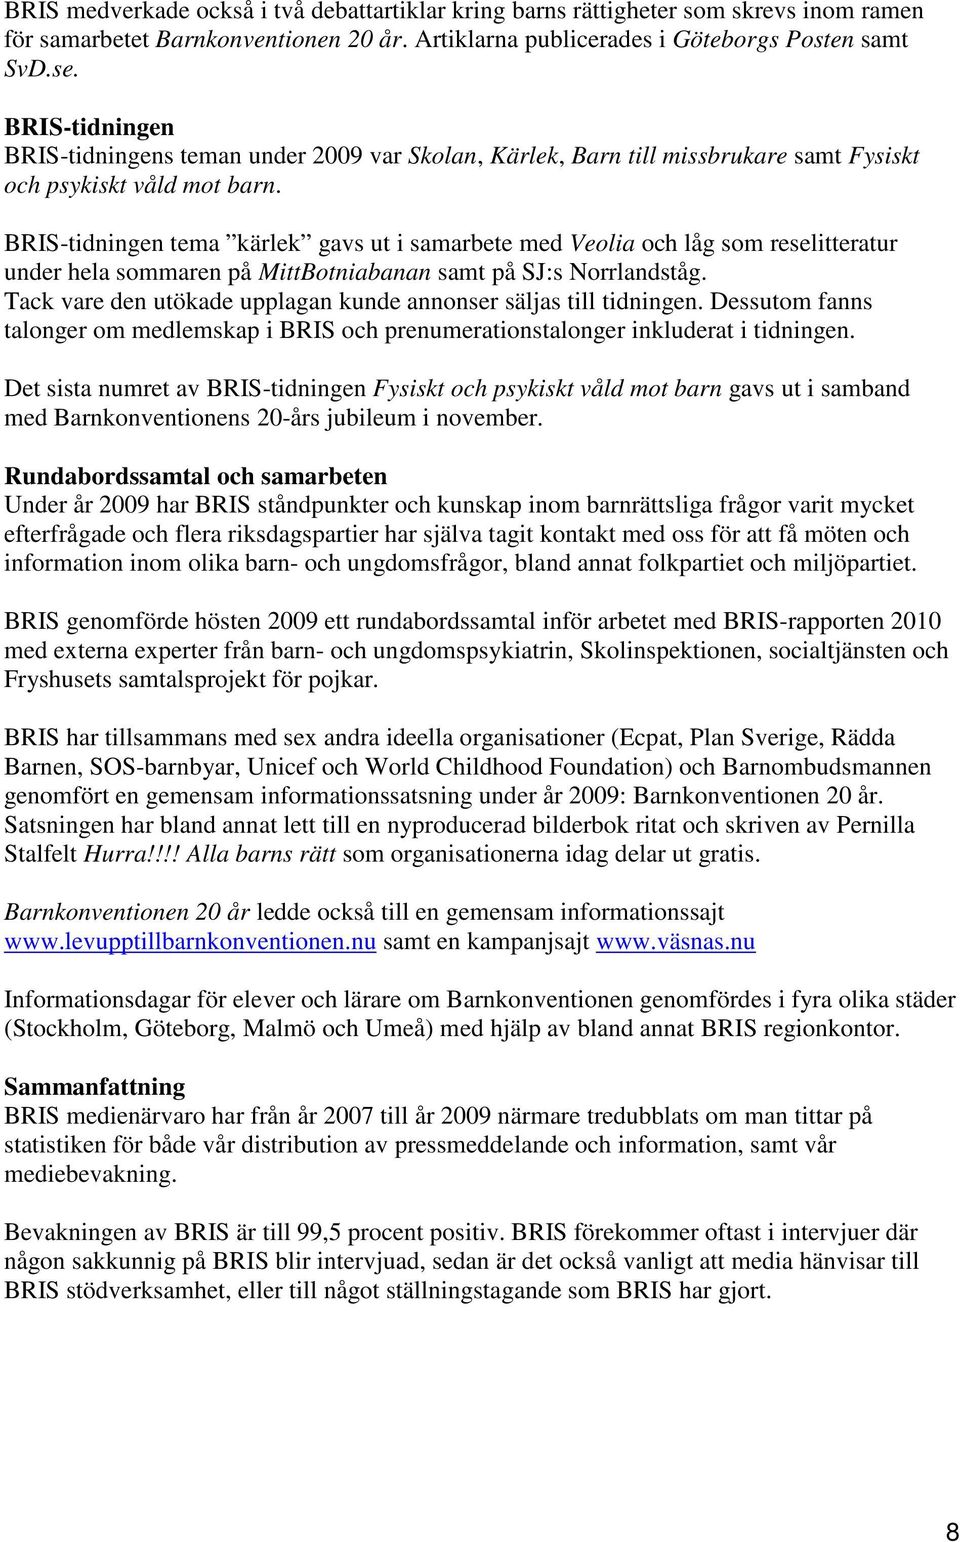 BRIS-tidningen tema kärlek gavs ut i samarbete med Veolia och låg som reselitteratur under hela sommaren på MittBotniabanan samt på SJ:s Norrlandståg.